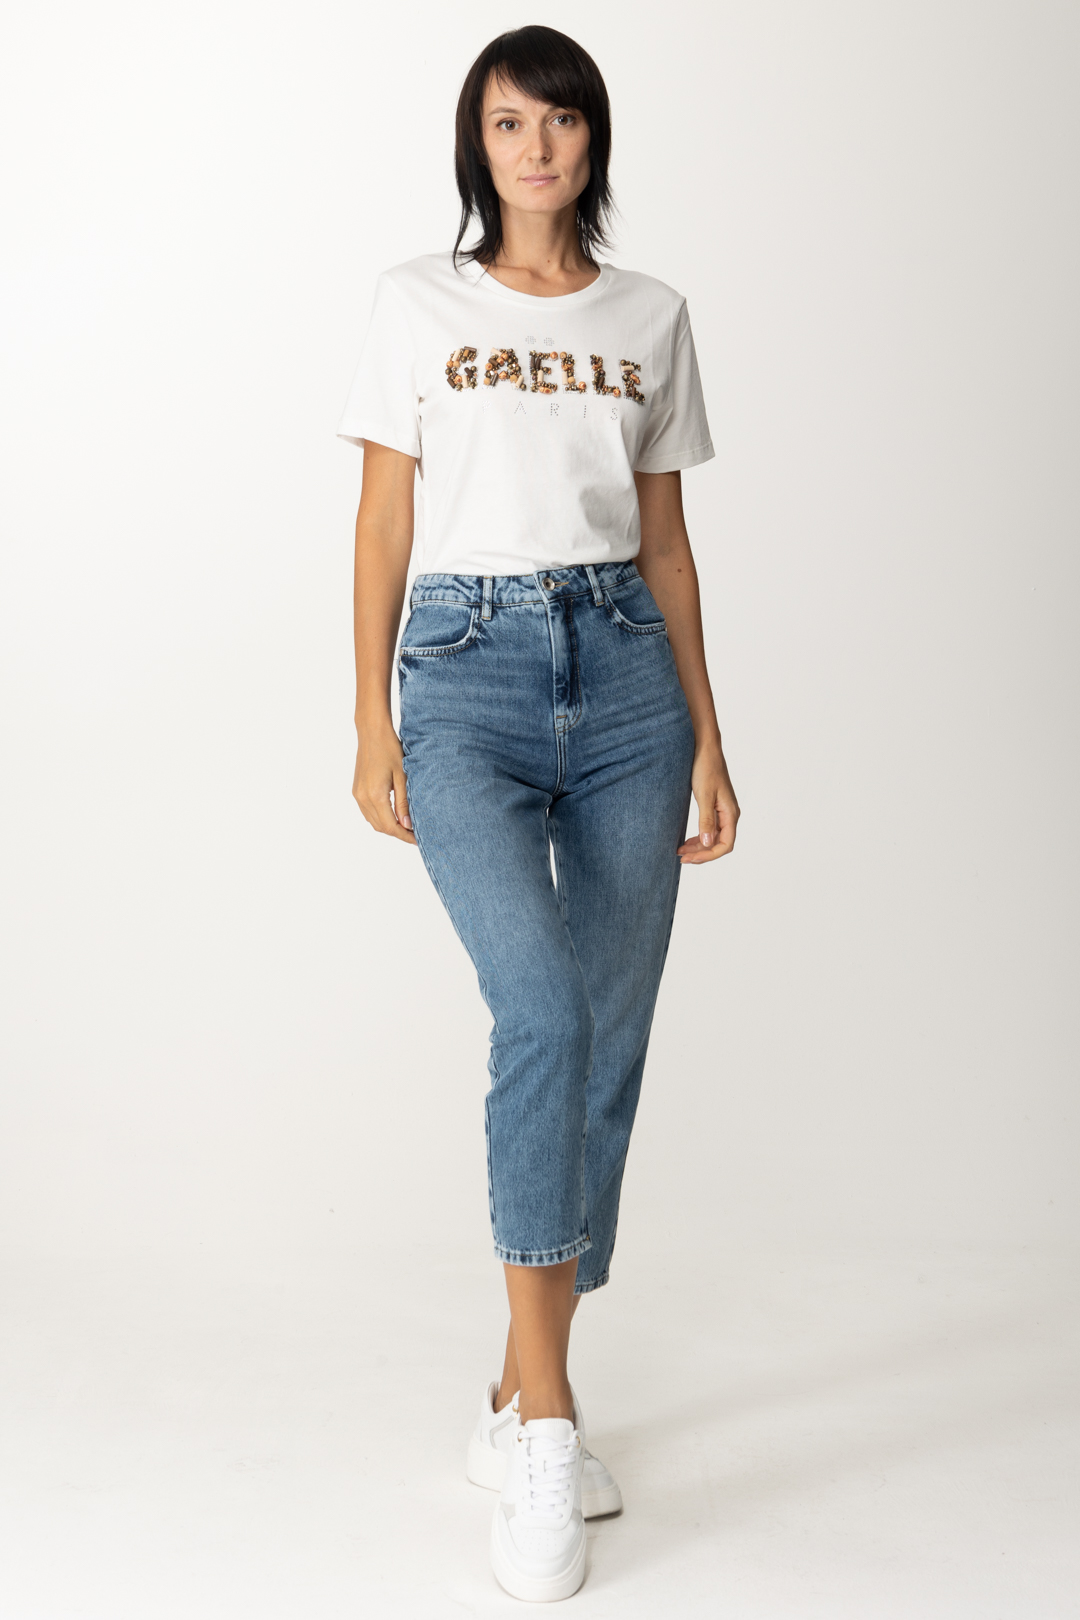 Aperçu: Gaelle Paris T-shirt avec logo brodé Offwhite